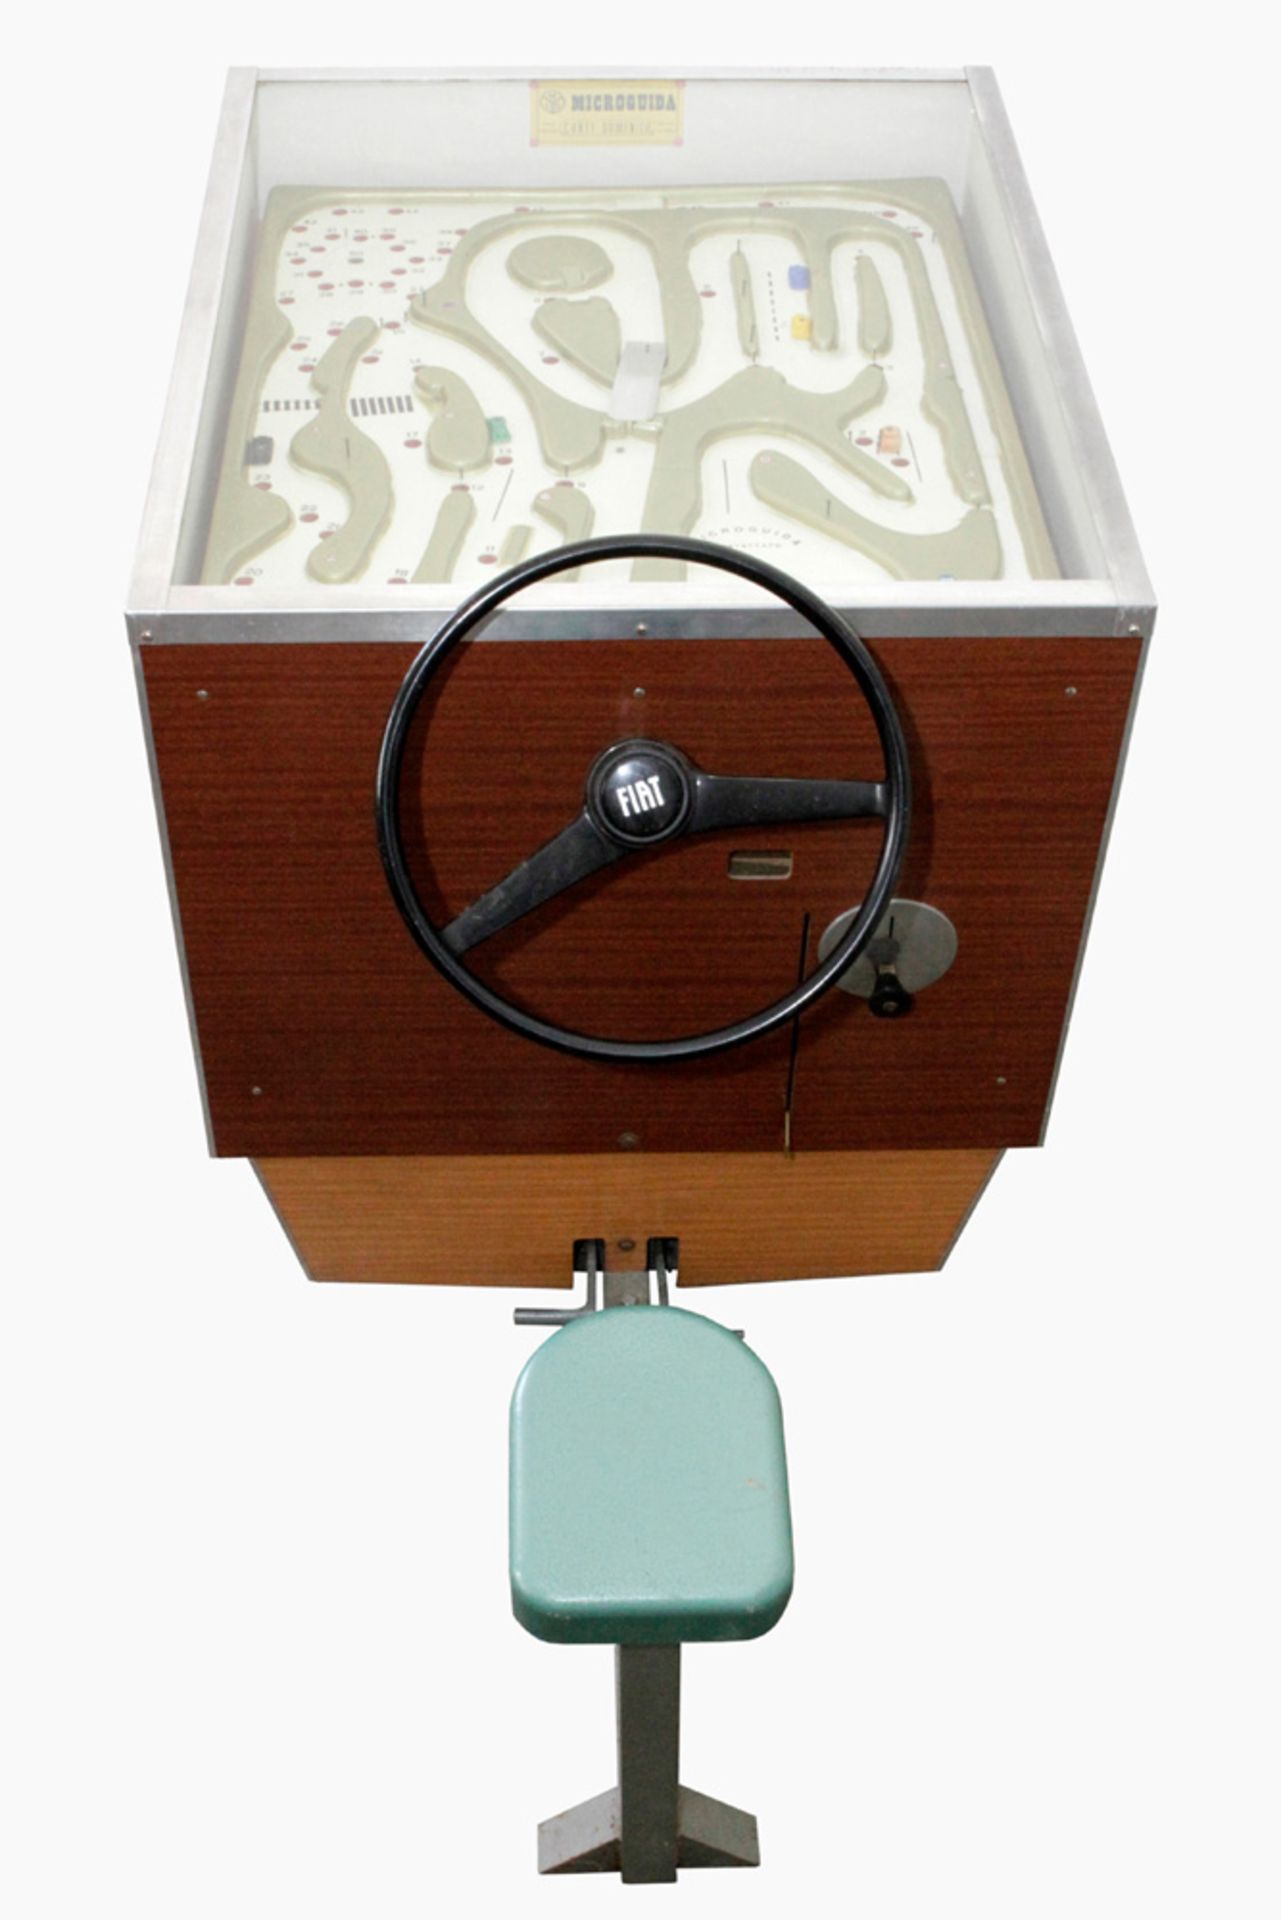 Verkehrsspiel-Automat MCD Microguida Brevetti, Laboratorio, Conti Domenico, Italia, mit Fiat